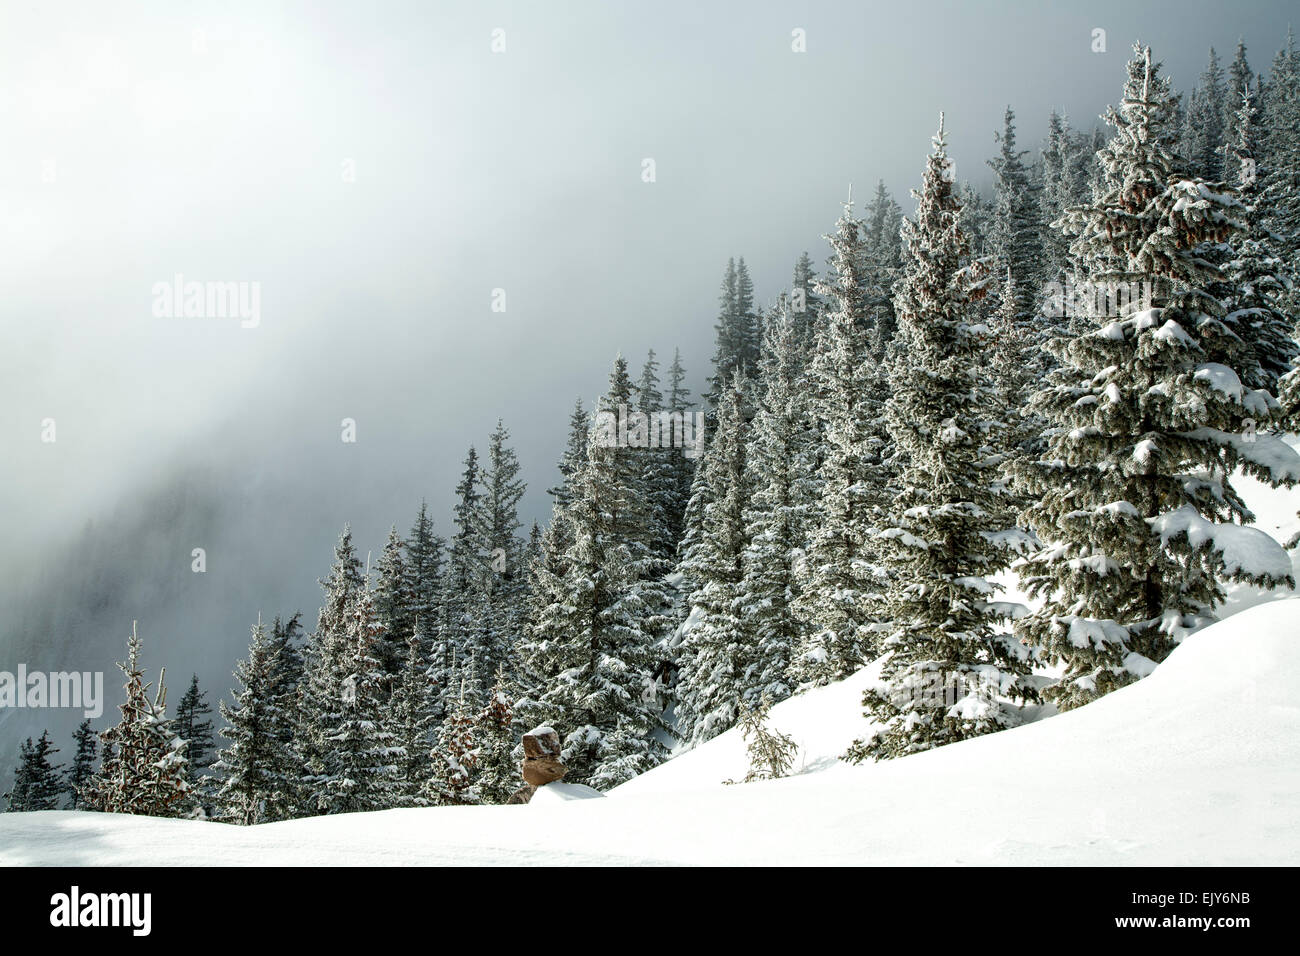 Verschneite Tannen und Nebel, Ravens Ridge Trail, Santa Fe National Forest, in der Nähe von Santa Fe, New Mexico, Vereinigte Staaten Stockfoto